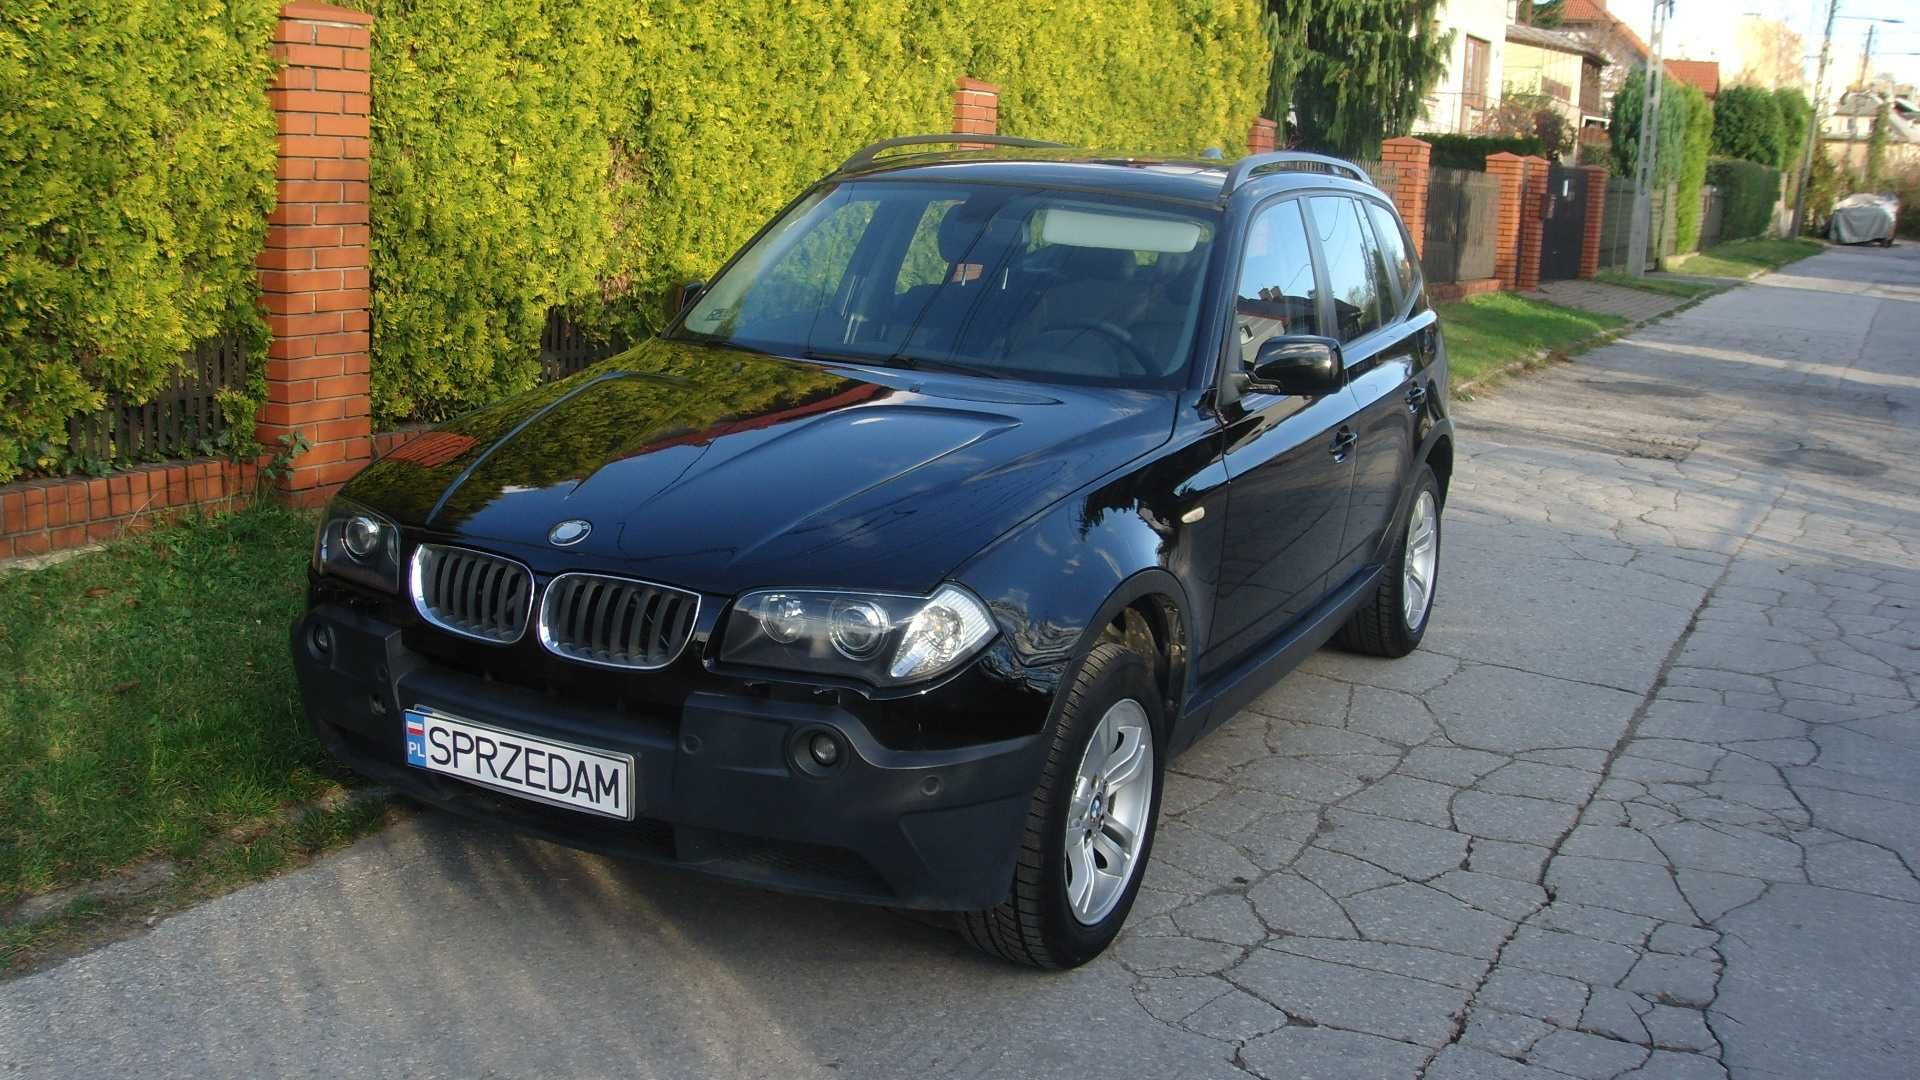 BMW X3  e8 2005 panorama 4x4